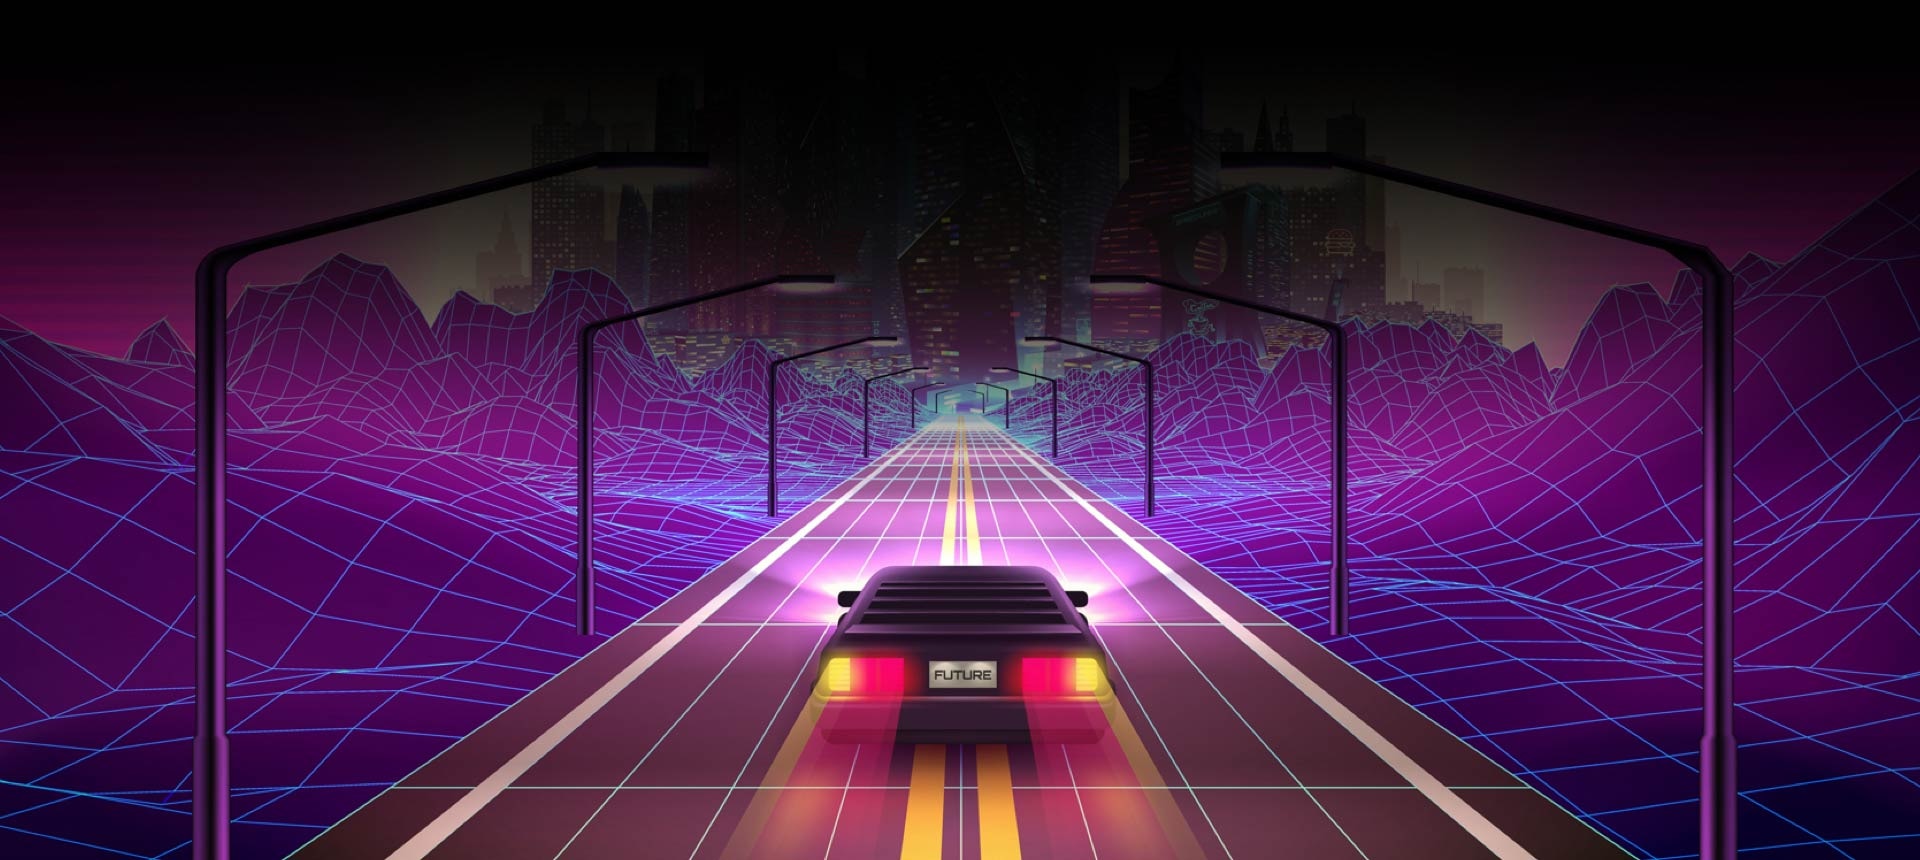 Illustration d’un jeu de course automobile. "FUTUR" est écrit sur la plaque de la voiture. 